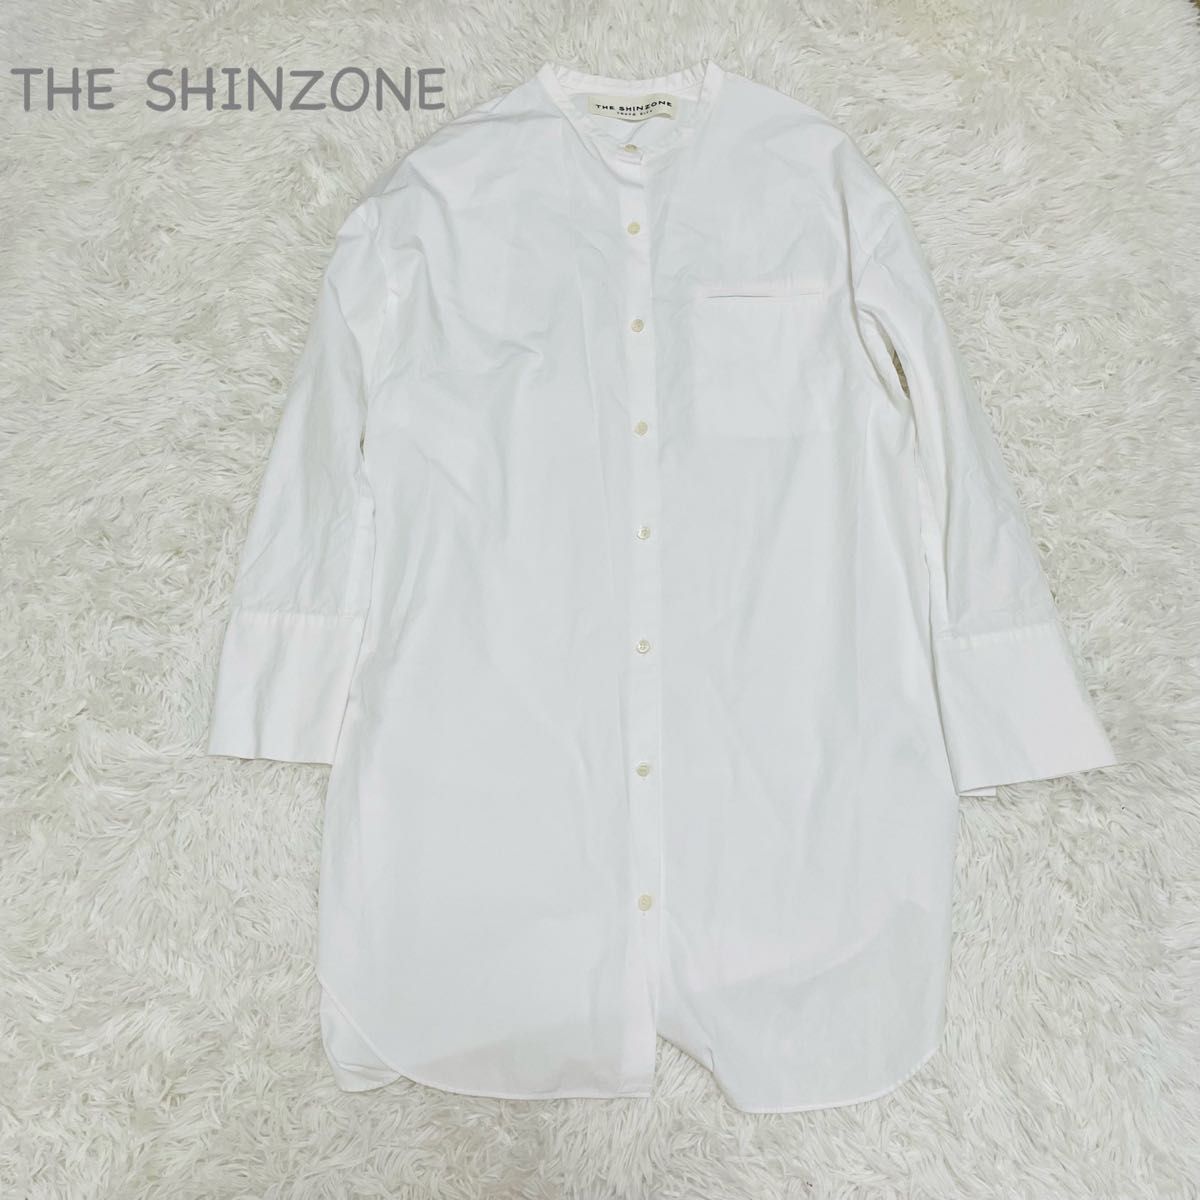 THE SHINZONE ザシンゾーン スタンドビッグシャツ ノーカラー 白 ホワイト バンドカラー バンドカラーシャツ 長袖